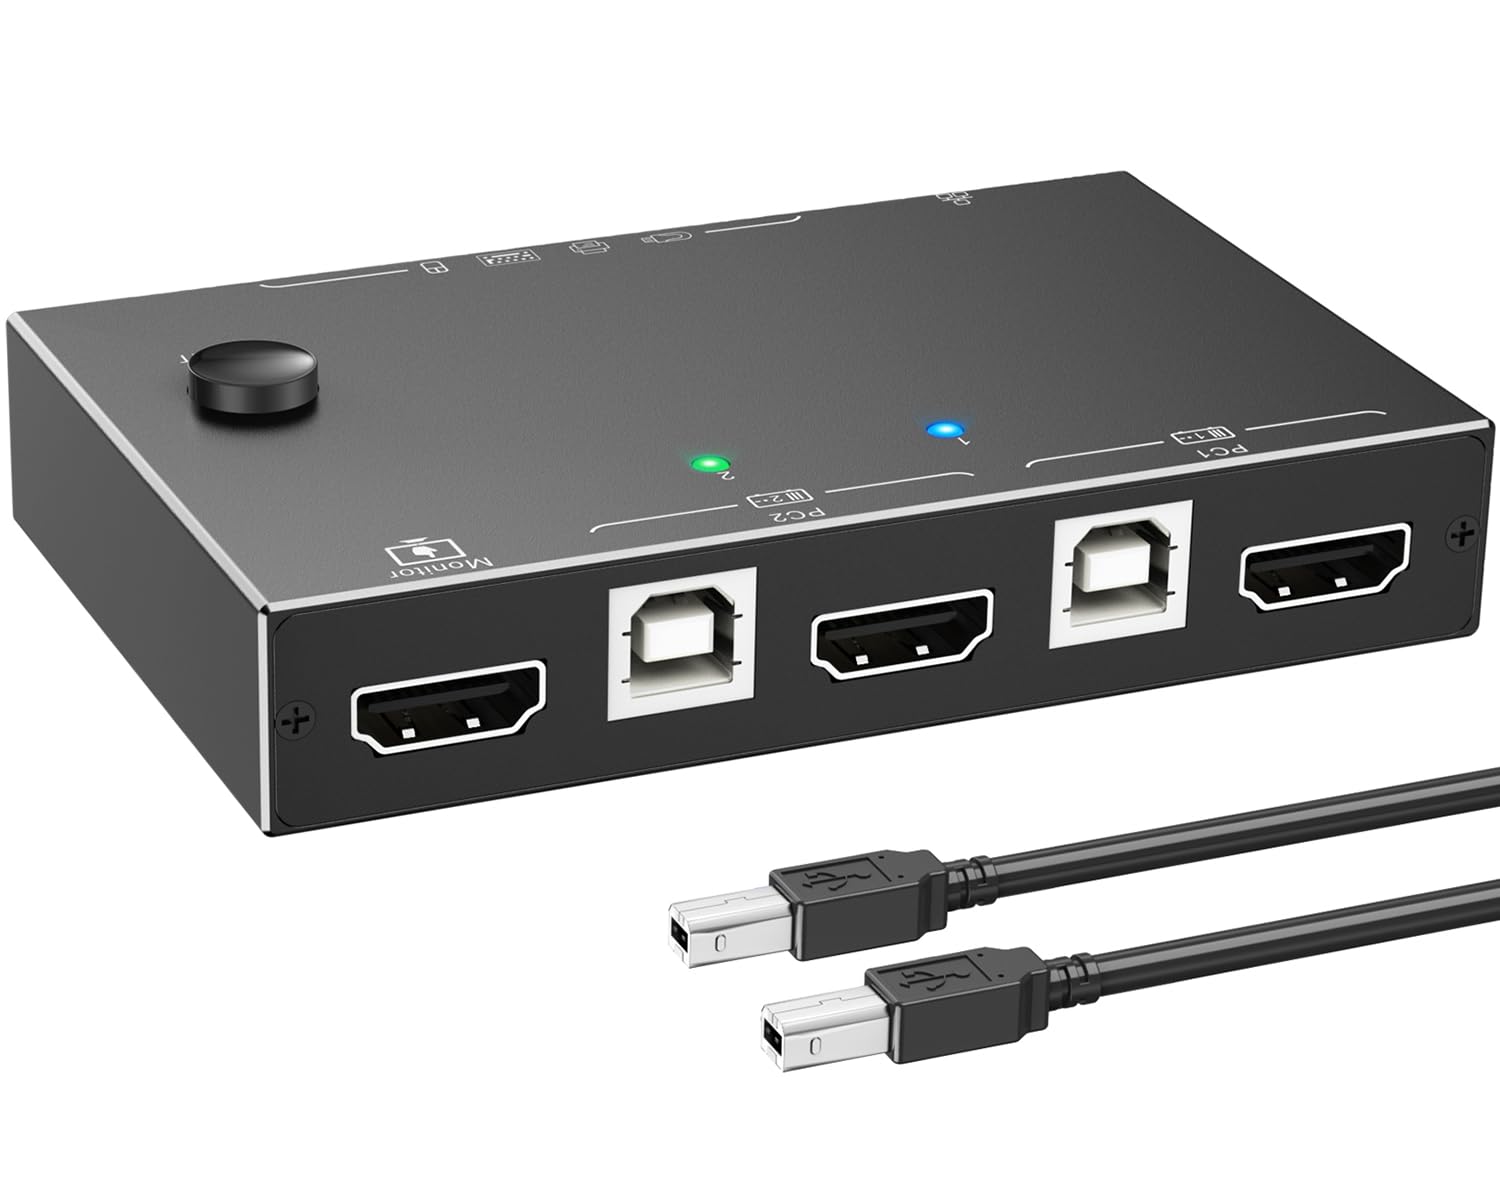 ESKEVE HDMI KVM Switch 2 PC 1 Monitor 4K@60Hz 2K@144Hz，KVM Switch mit HDMI 2.0,Ethernet und 4 USB 2.0 Ports für 2 PC Sharing 1 Monitor und Tastatur, Maus, Drucker, U Disk, mit 2 USB-Kabeln